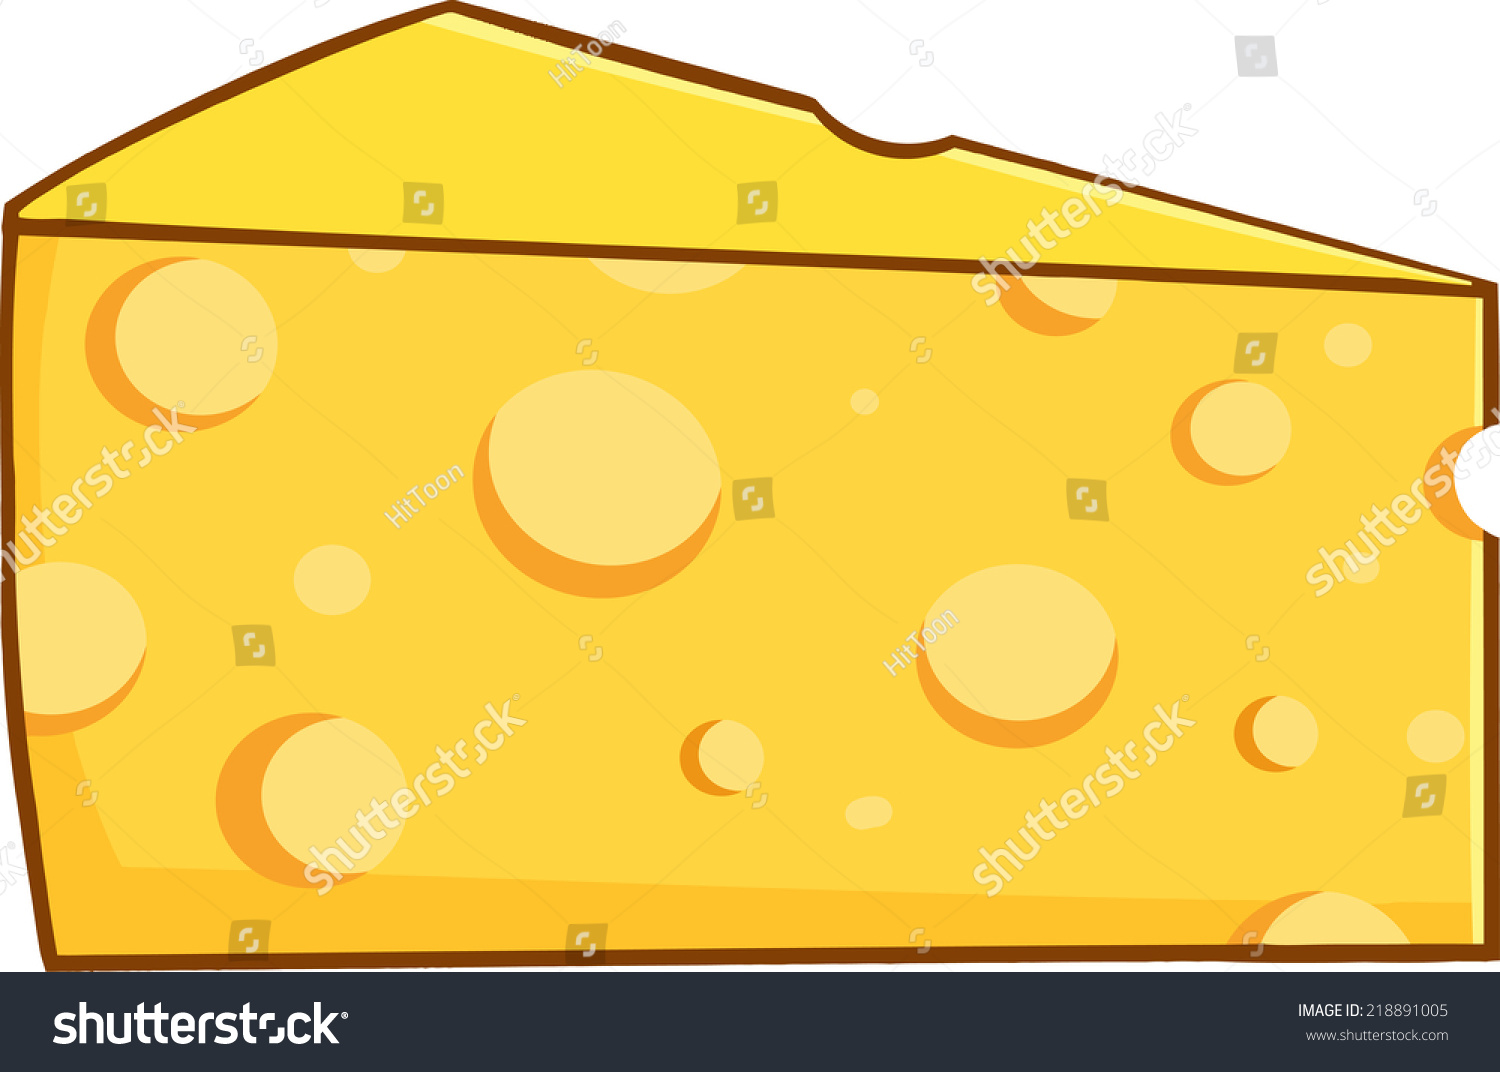 Cheese в упаковке cartoon